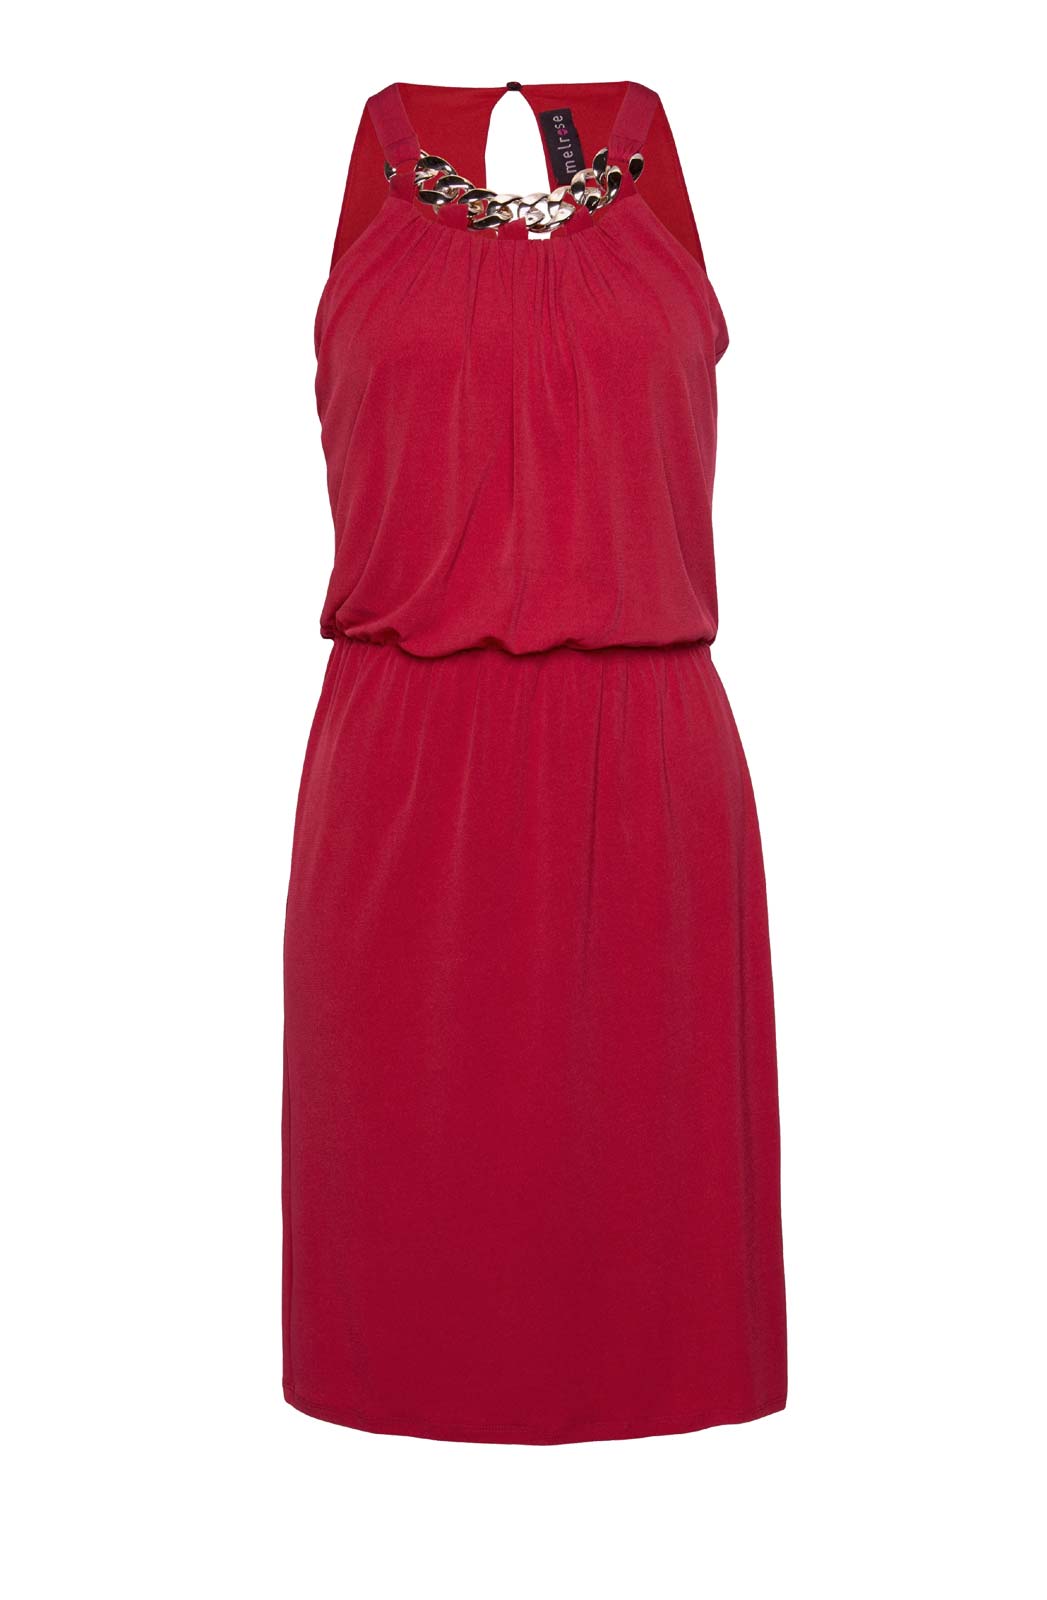 Melrose džersejové šaty s ozdobnou retiazkou, červené